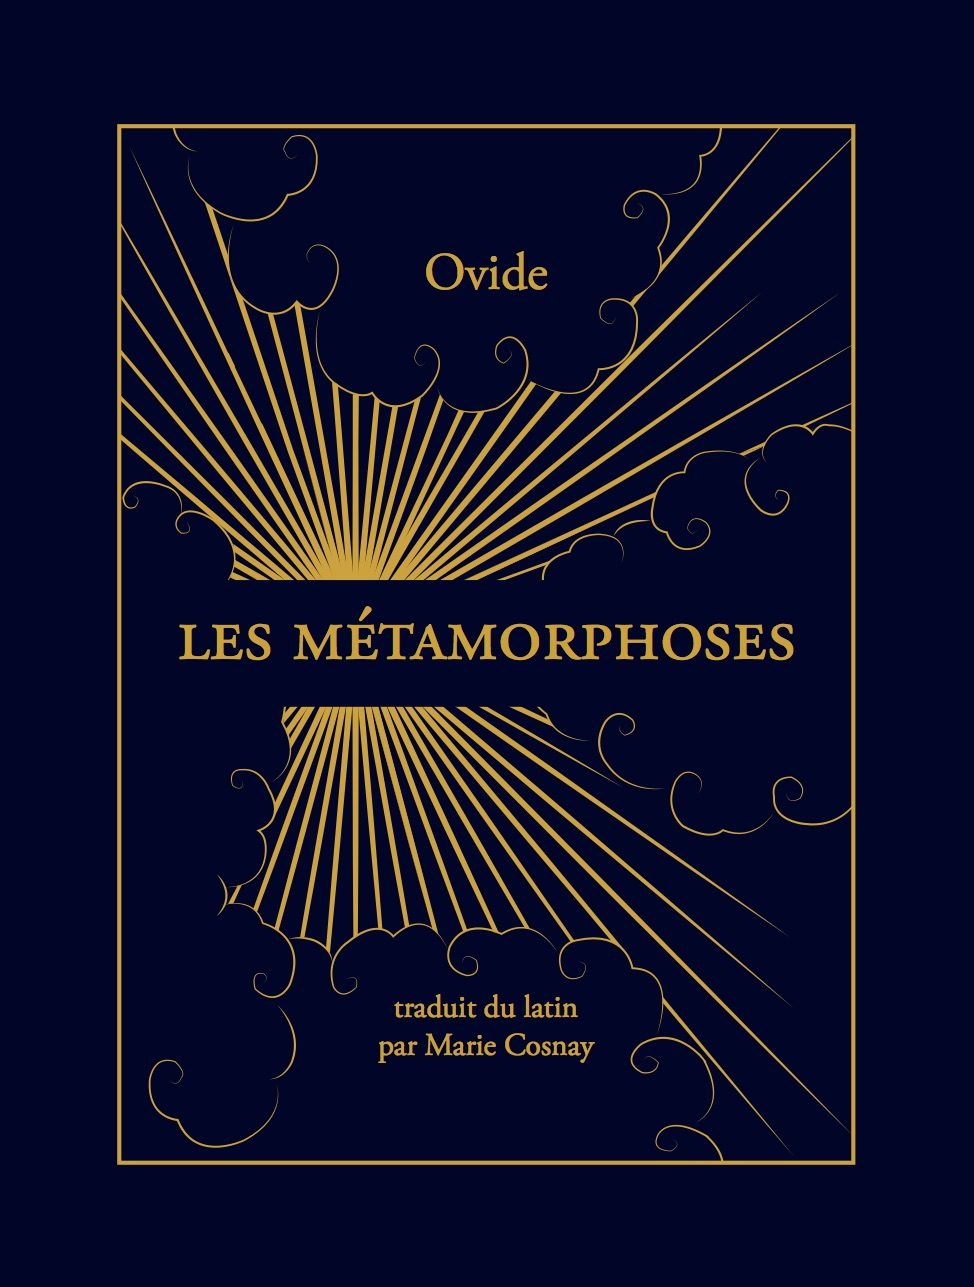 Les Métamorphoses, Ovide, éditions de l'Ogre